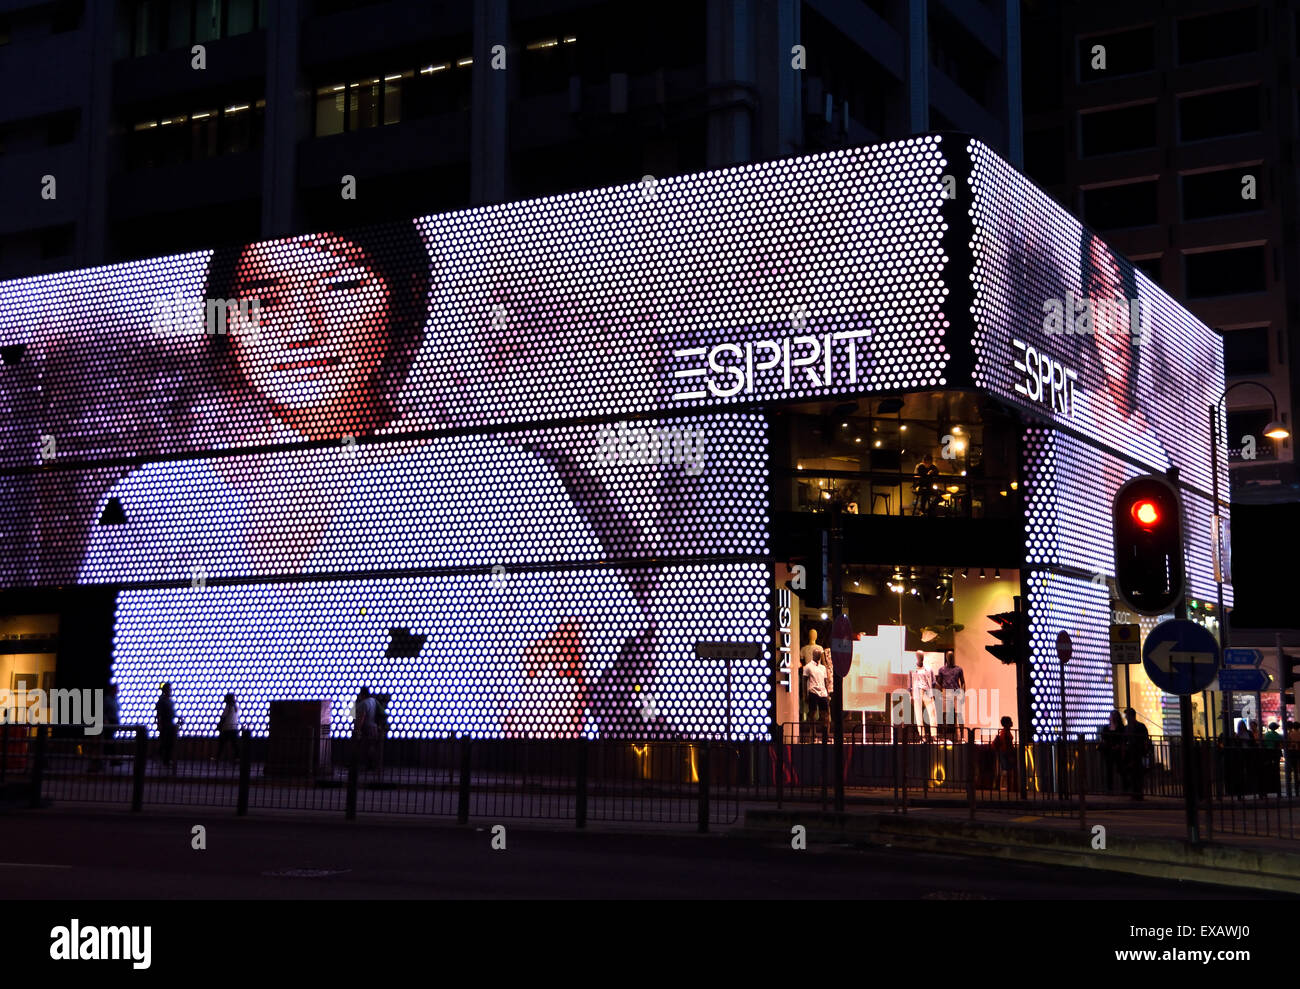 Esprit negozio di moda di Hong Kong Kowloon - Sim Sha Tsui - cinese Cina ( sera notte di luce al neon billboard ) Foto Stock